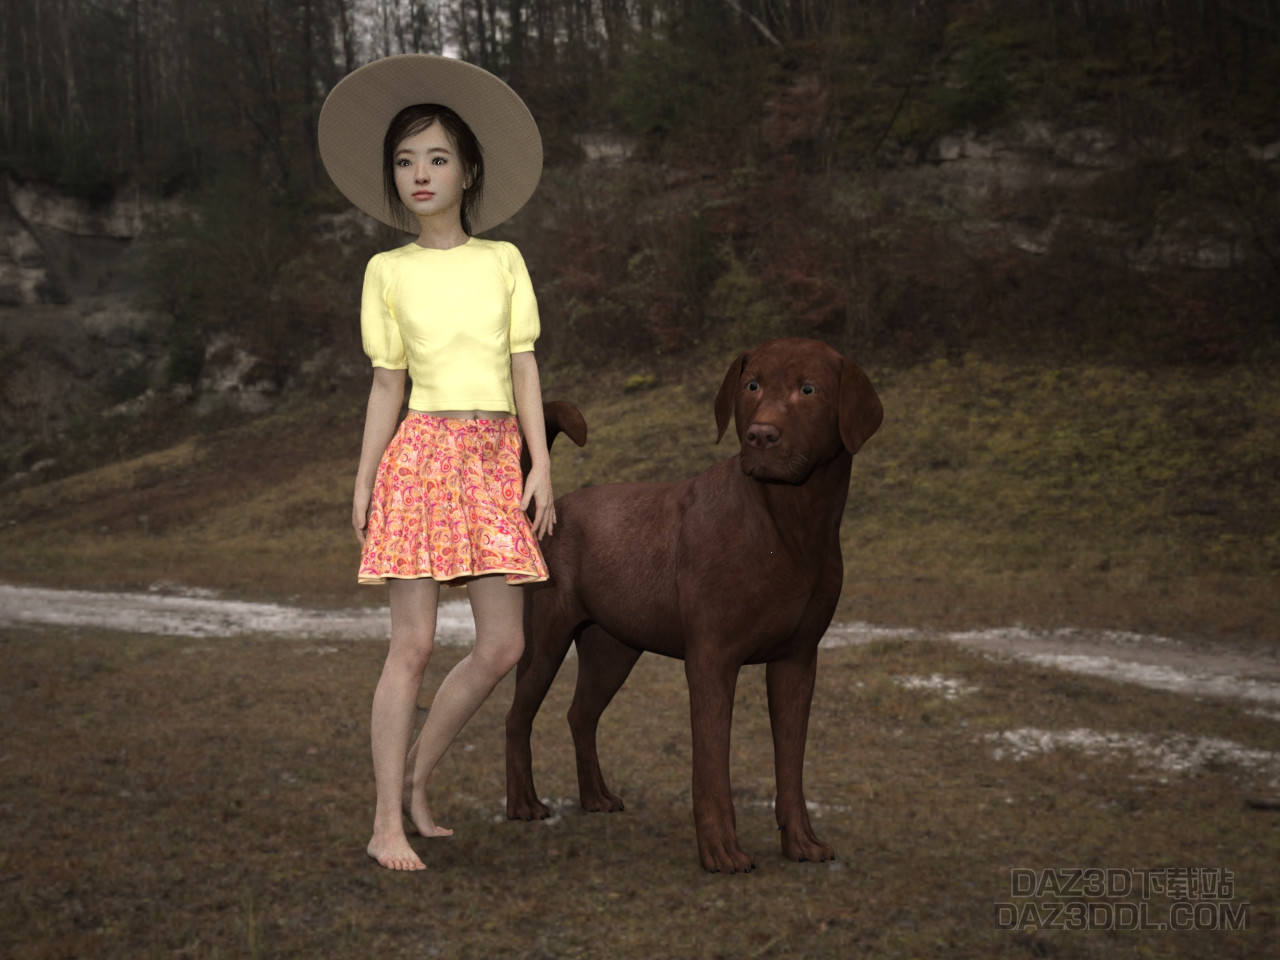 girl and dog.jpg